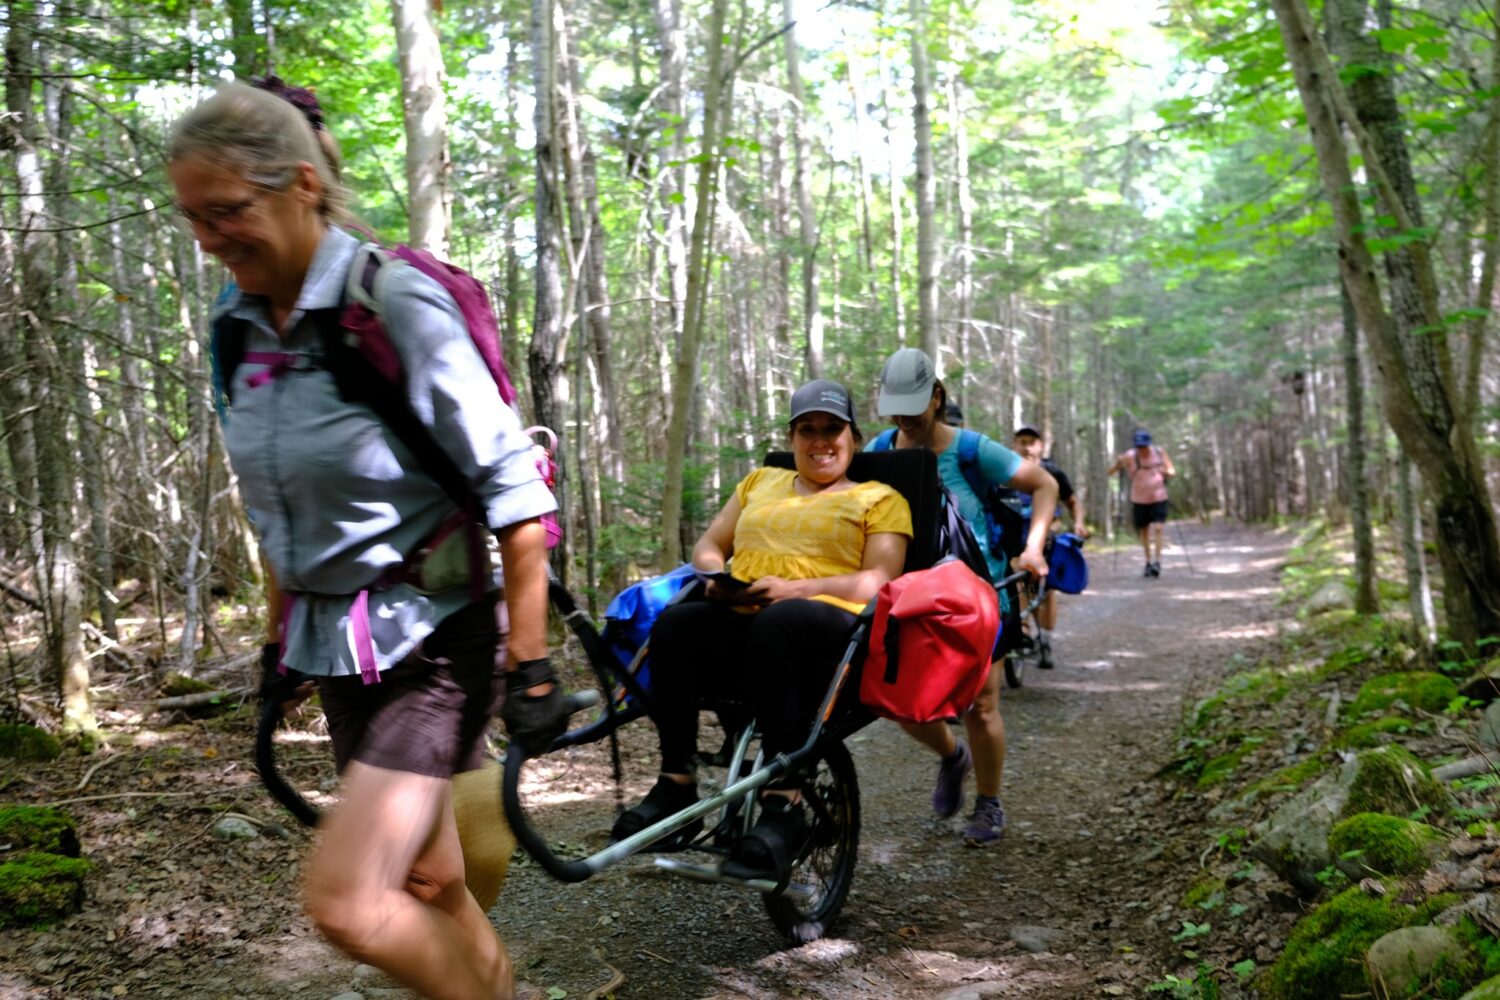 Randonnée en forêt de plusieurs personnes incluant une personne avec une chaise roulante adapté à la randonnée et 2 autres personnes qui tiennent cette chaise.